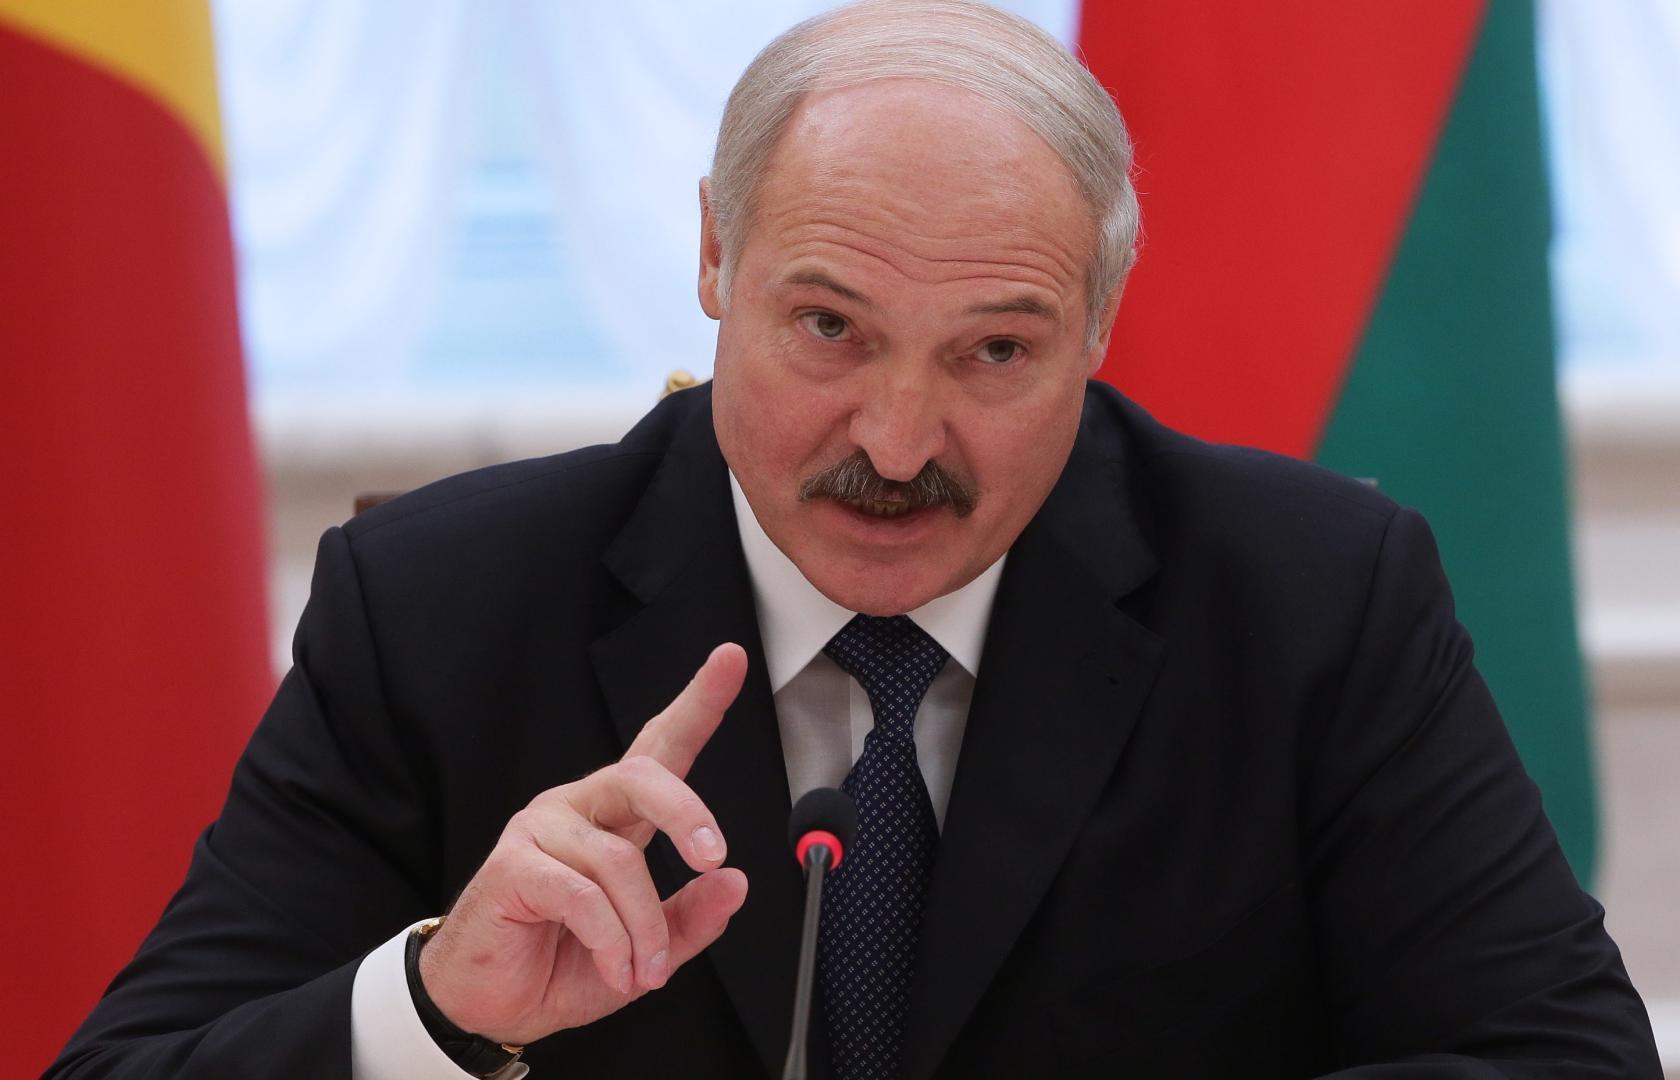 Protestele antiguvernamentale, penalizate financiar în Belarus